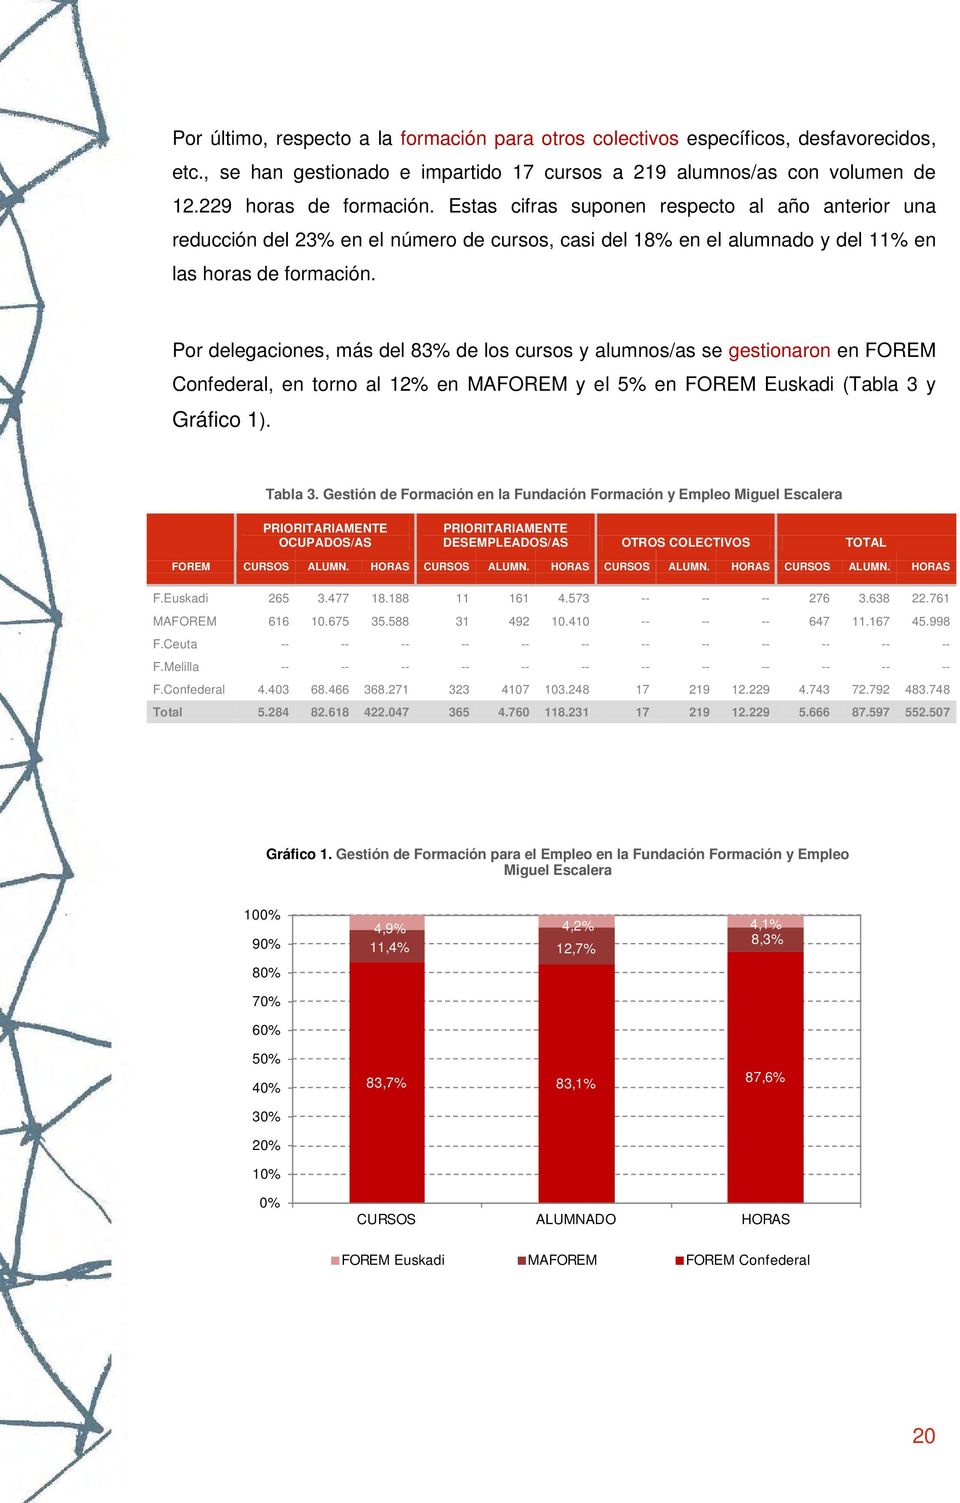 Por delegaciones, más del 83% de los cursos y alumnos/as se gestionaron en FOREM Confederal, en torno al 12% en MAFOREM y el 5% en FOREM Euskadi (Tabla 3 y Gráfico 1). Tabla 3.